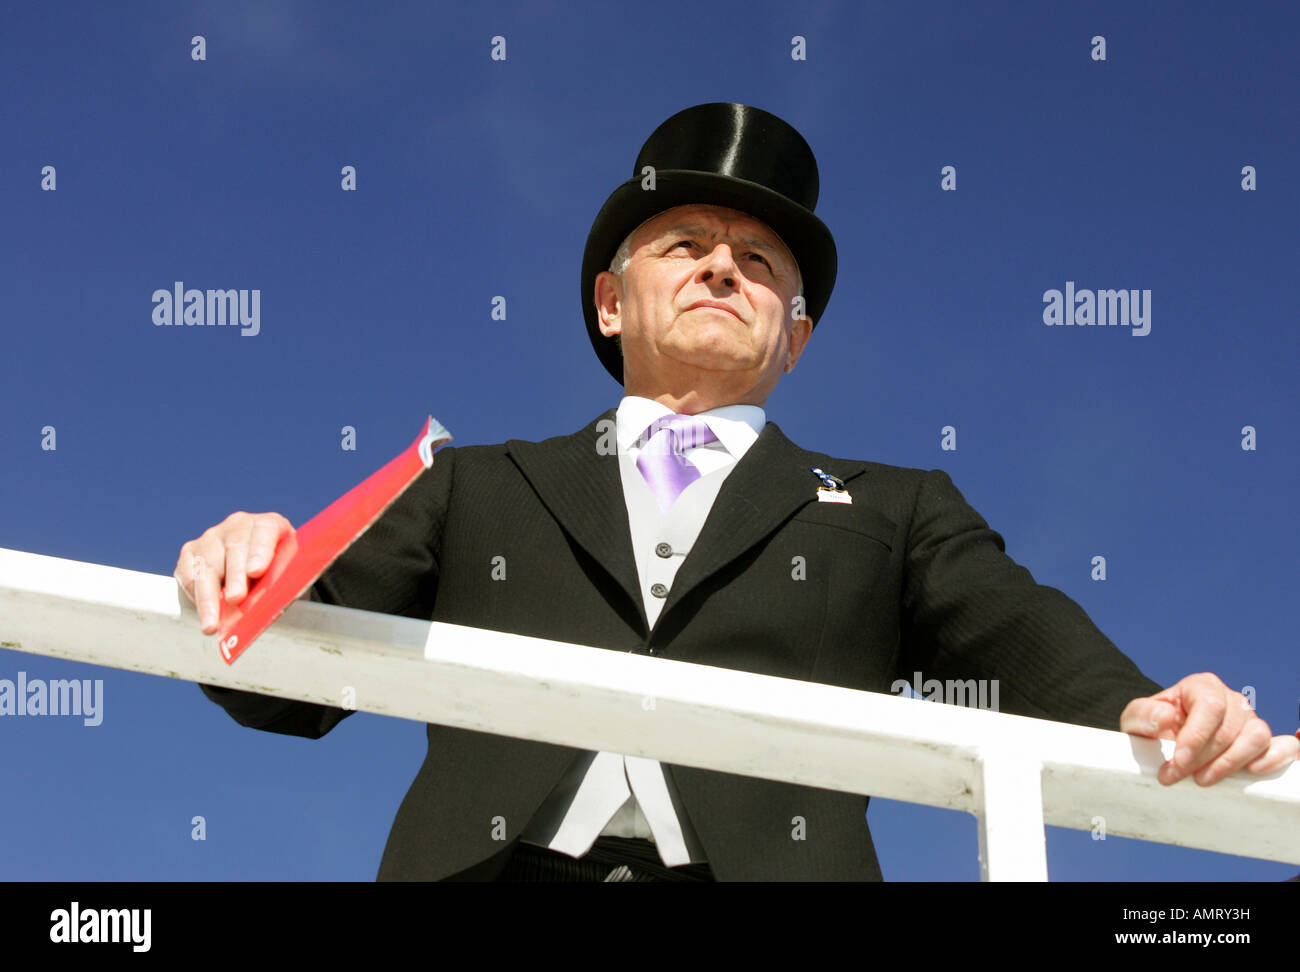 Uomo che indossa un tailcoat e tophat presso la Epsom Downs corse di cavalli, Epsom, Gran Bretagna Foto Stock